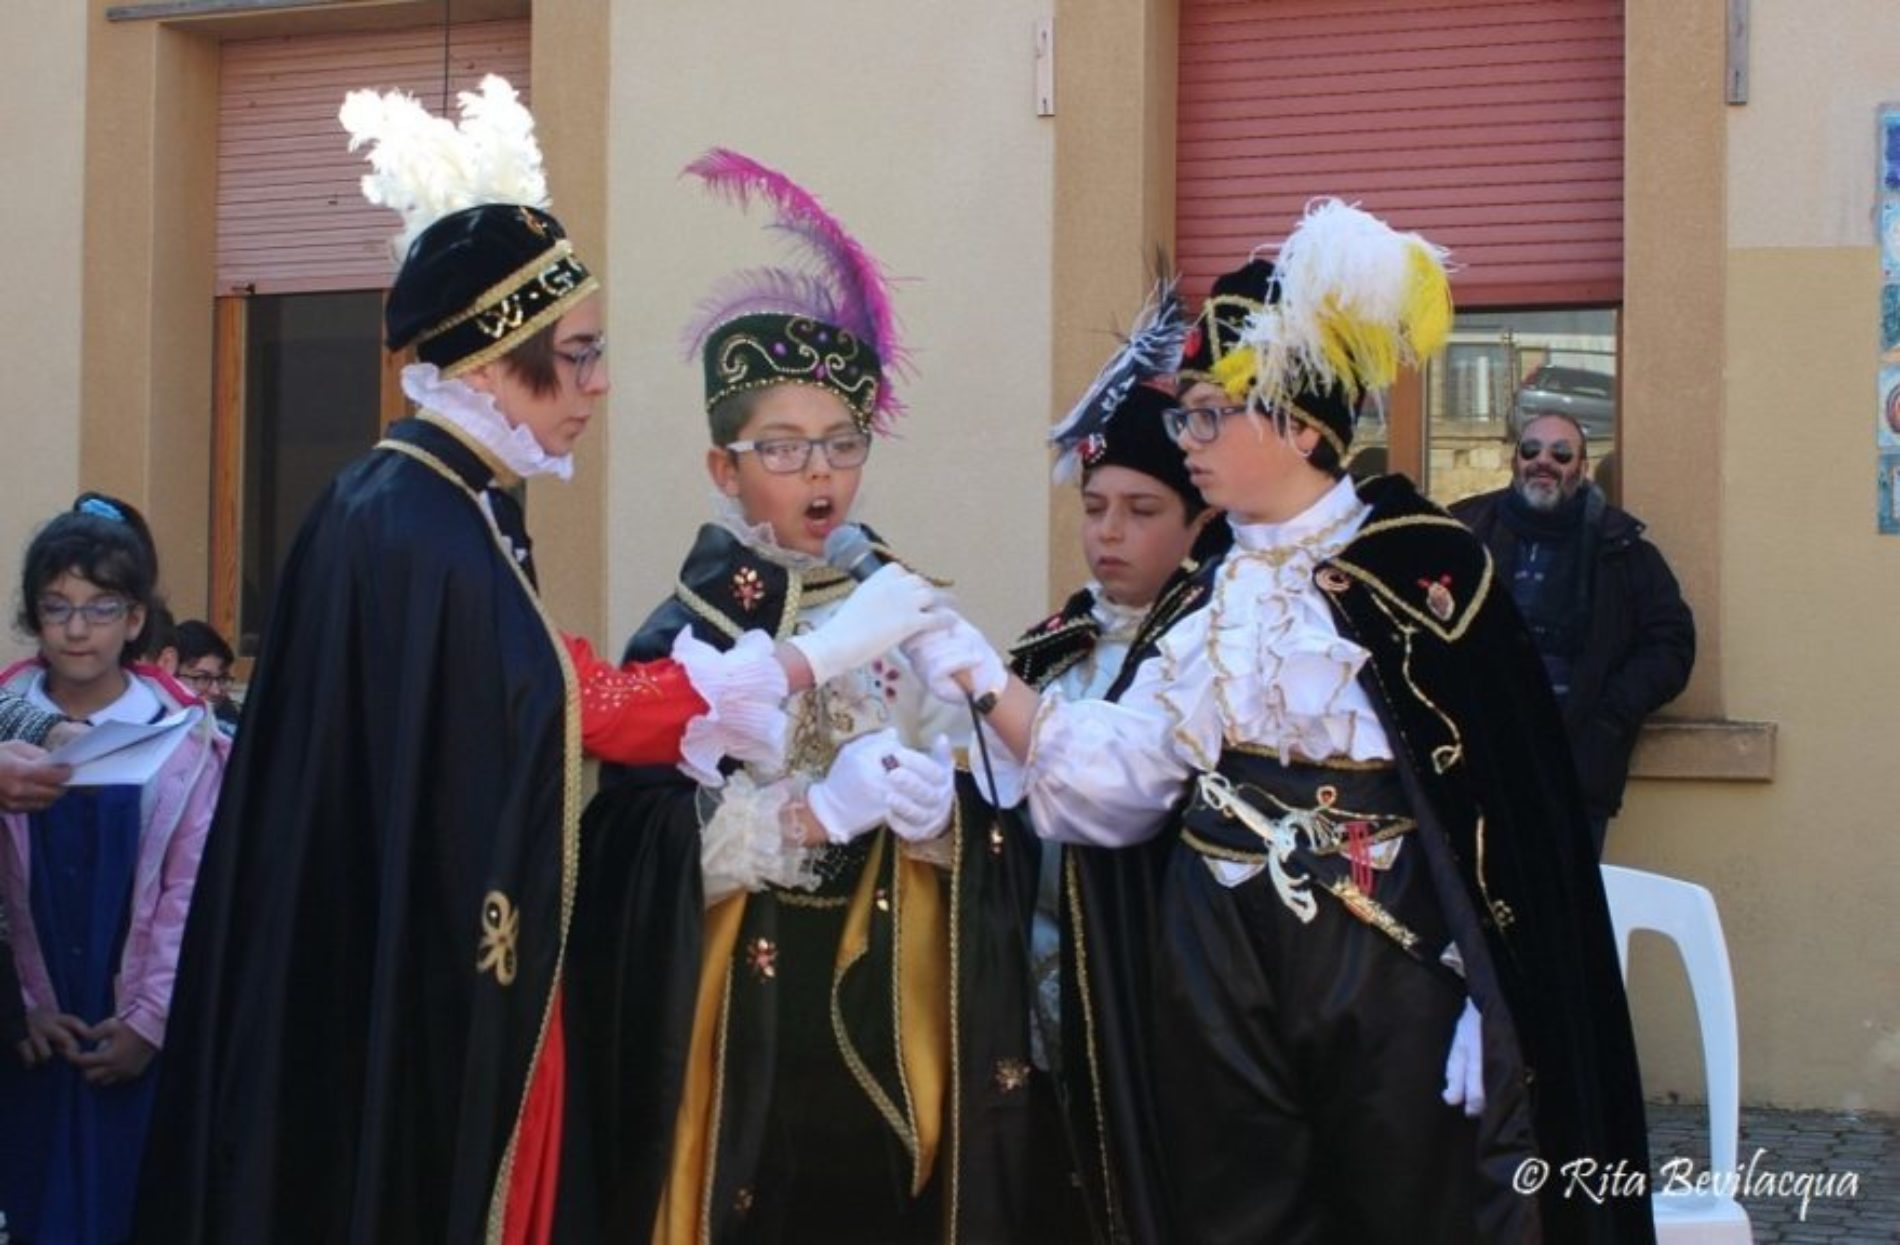 La tradizione della “Tavolata di san Giuseppe” realizzata dall’Istituto Comprensivo “S. G. Bosco” Barrafranca